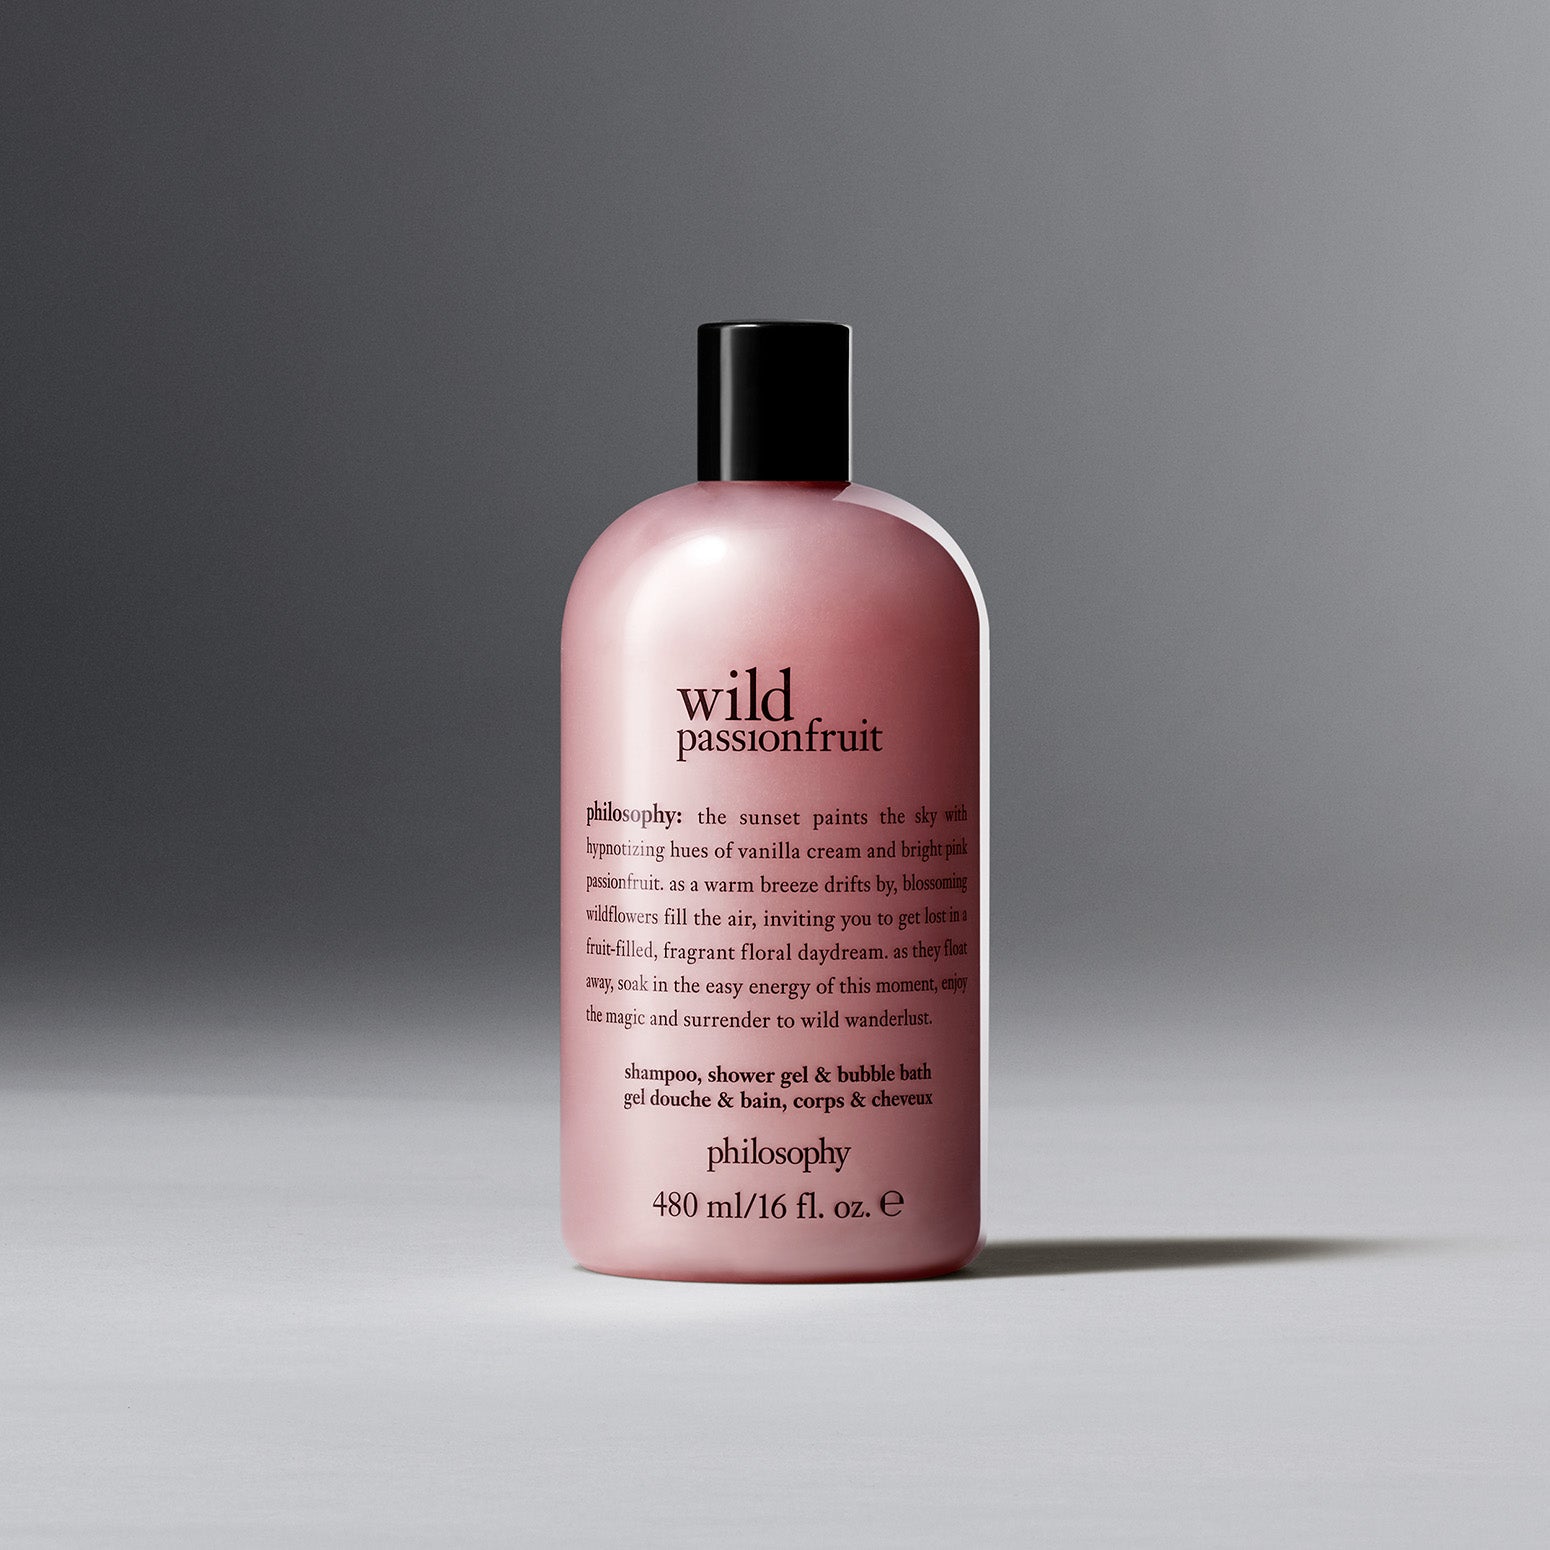 wild passion fruit shampoo, shower gel & bubble bath